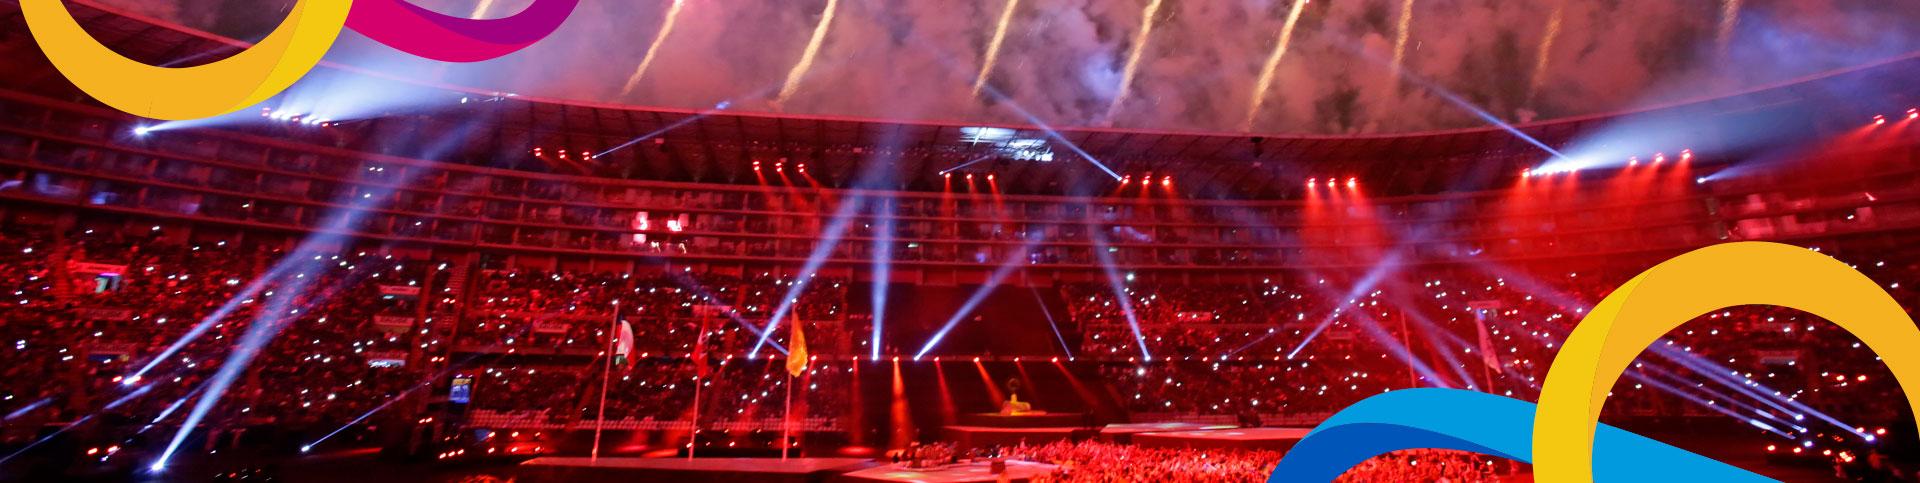 Ceremonia de Inauguración Lima 2019 en el Estadio Nacional